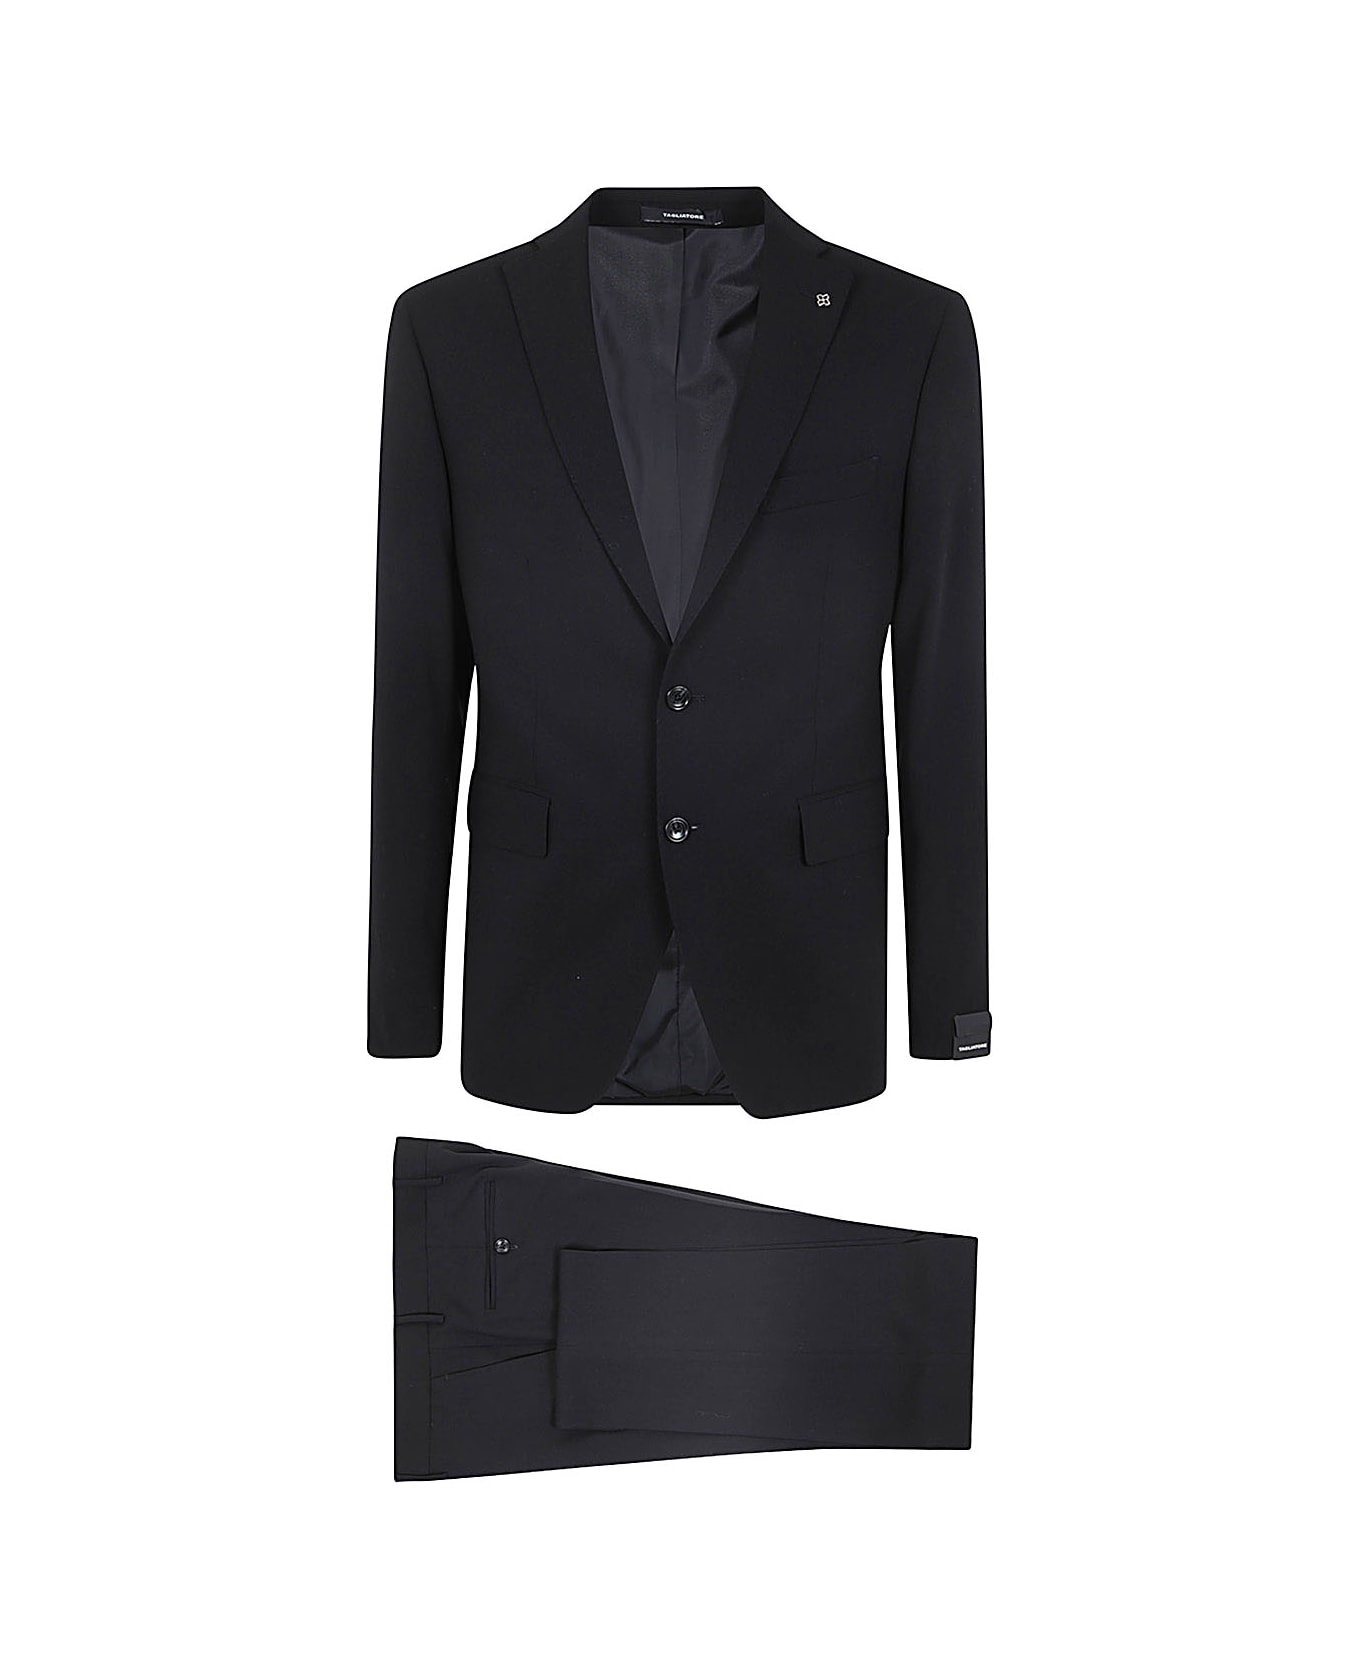 Tagliatore Crepe Effect Classic Suit - Black